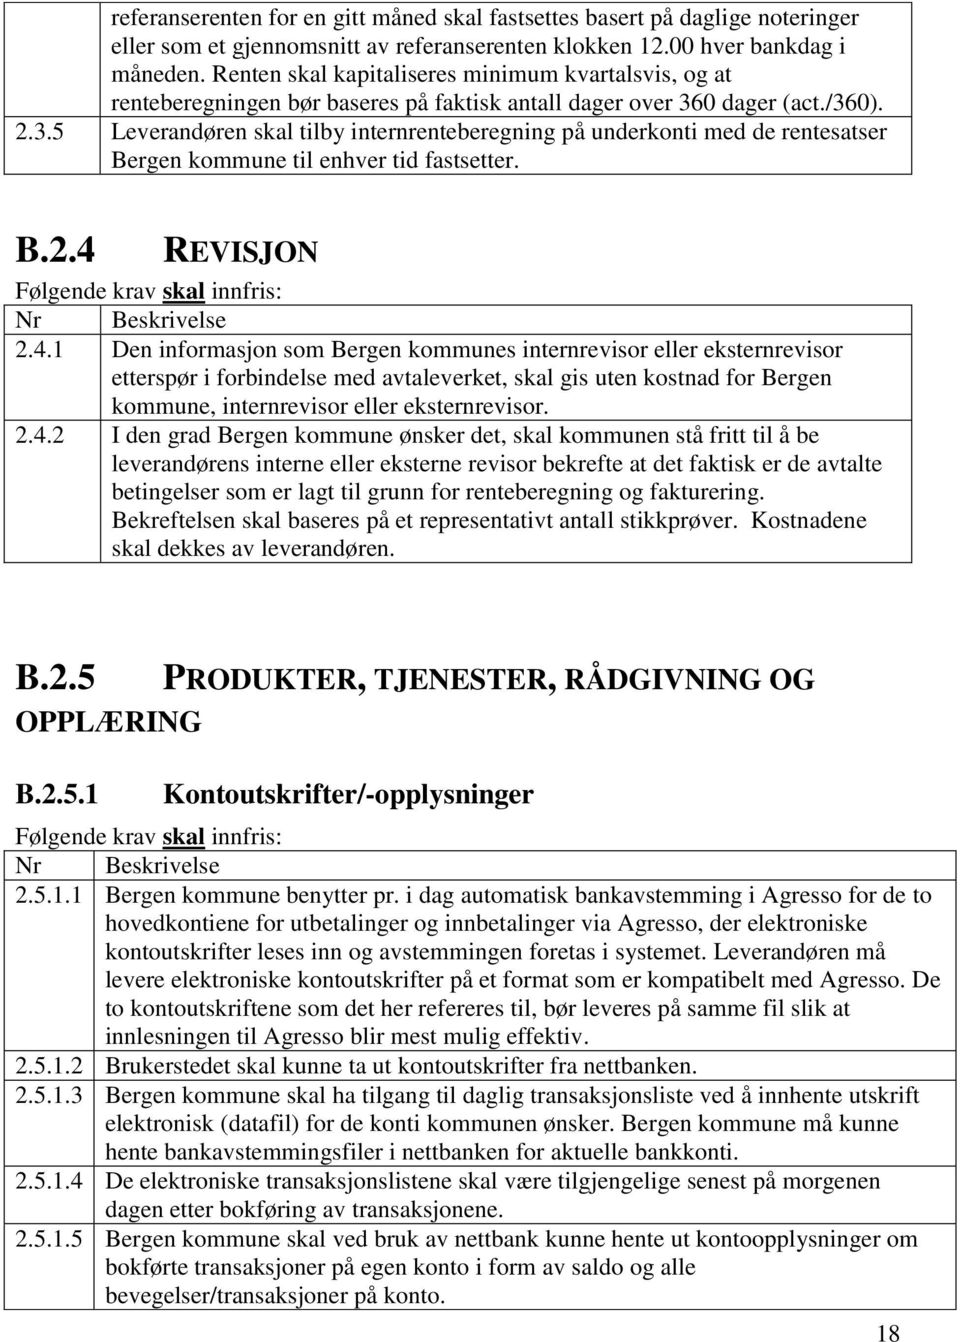 0 dager (act./360). 2.3.5 Leverandøren skal tilby internrenteberegning på underkonti med de rentesatser Bergen kommune til enhver tid fastsetter. B.2.4 REVISJON Følgende krav skal innfris: Nr Beskrivelse 2.